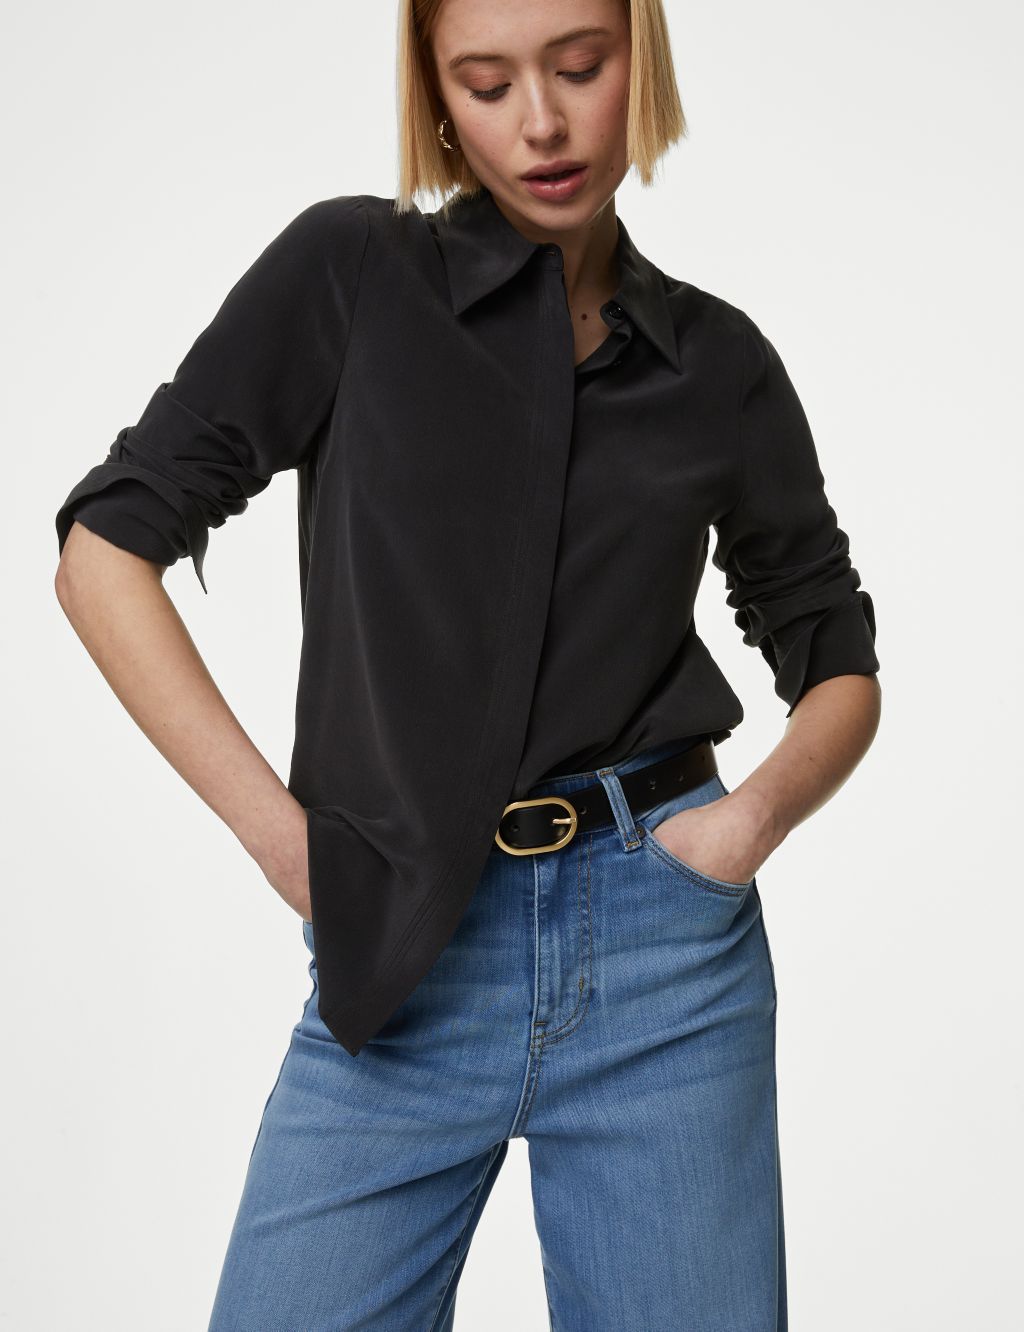 Silk Long Sleeves Shirt for Women, Button Up Shirt